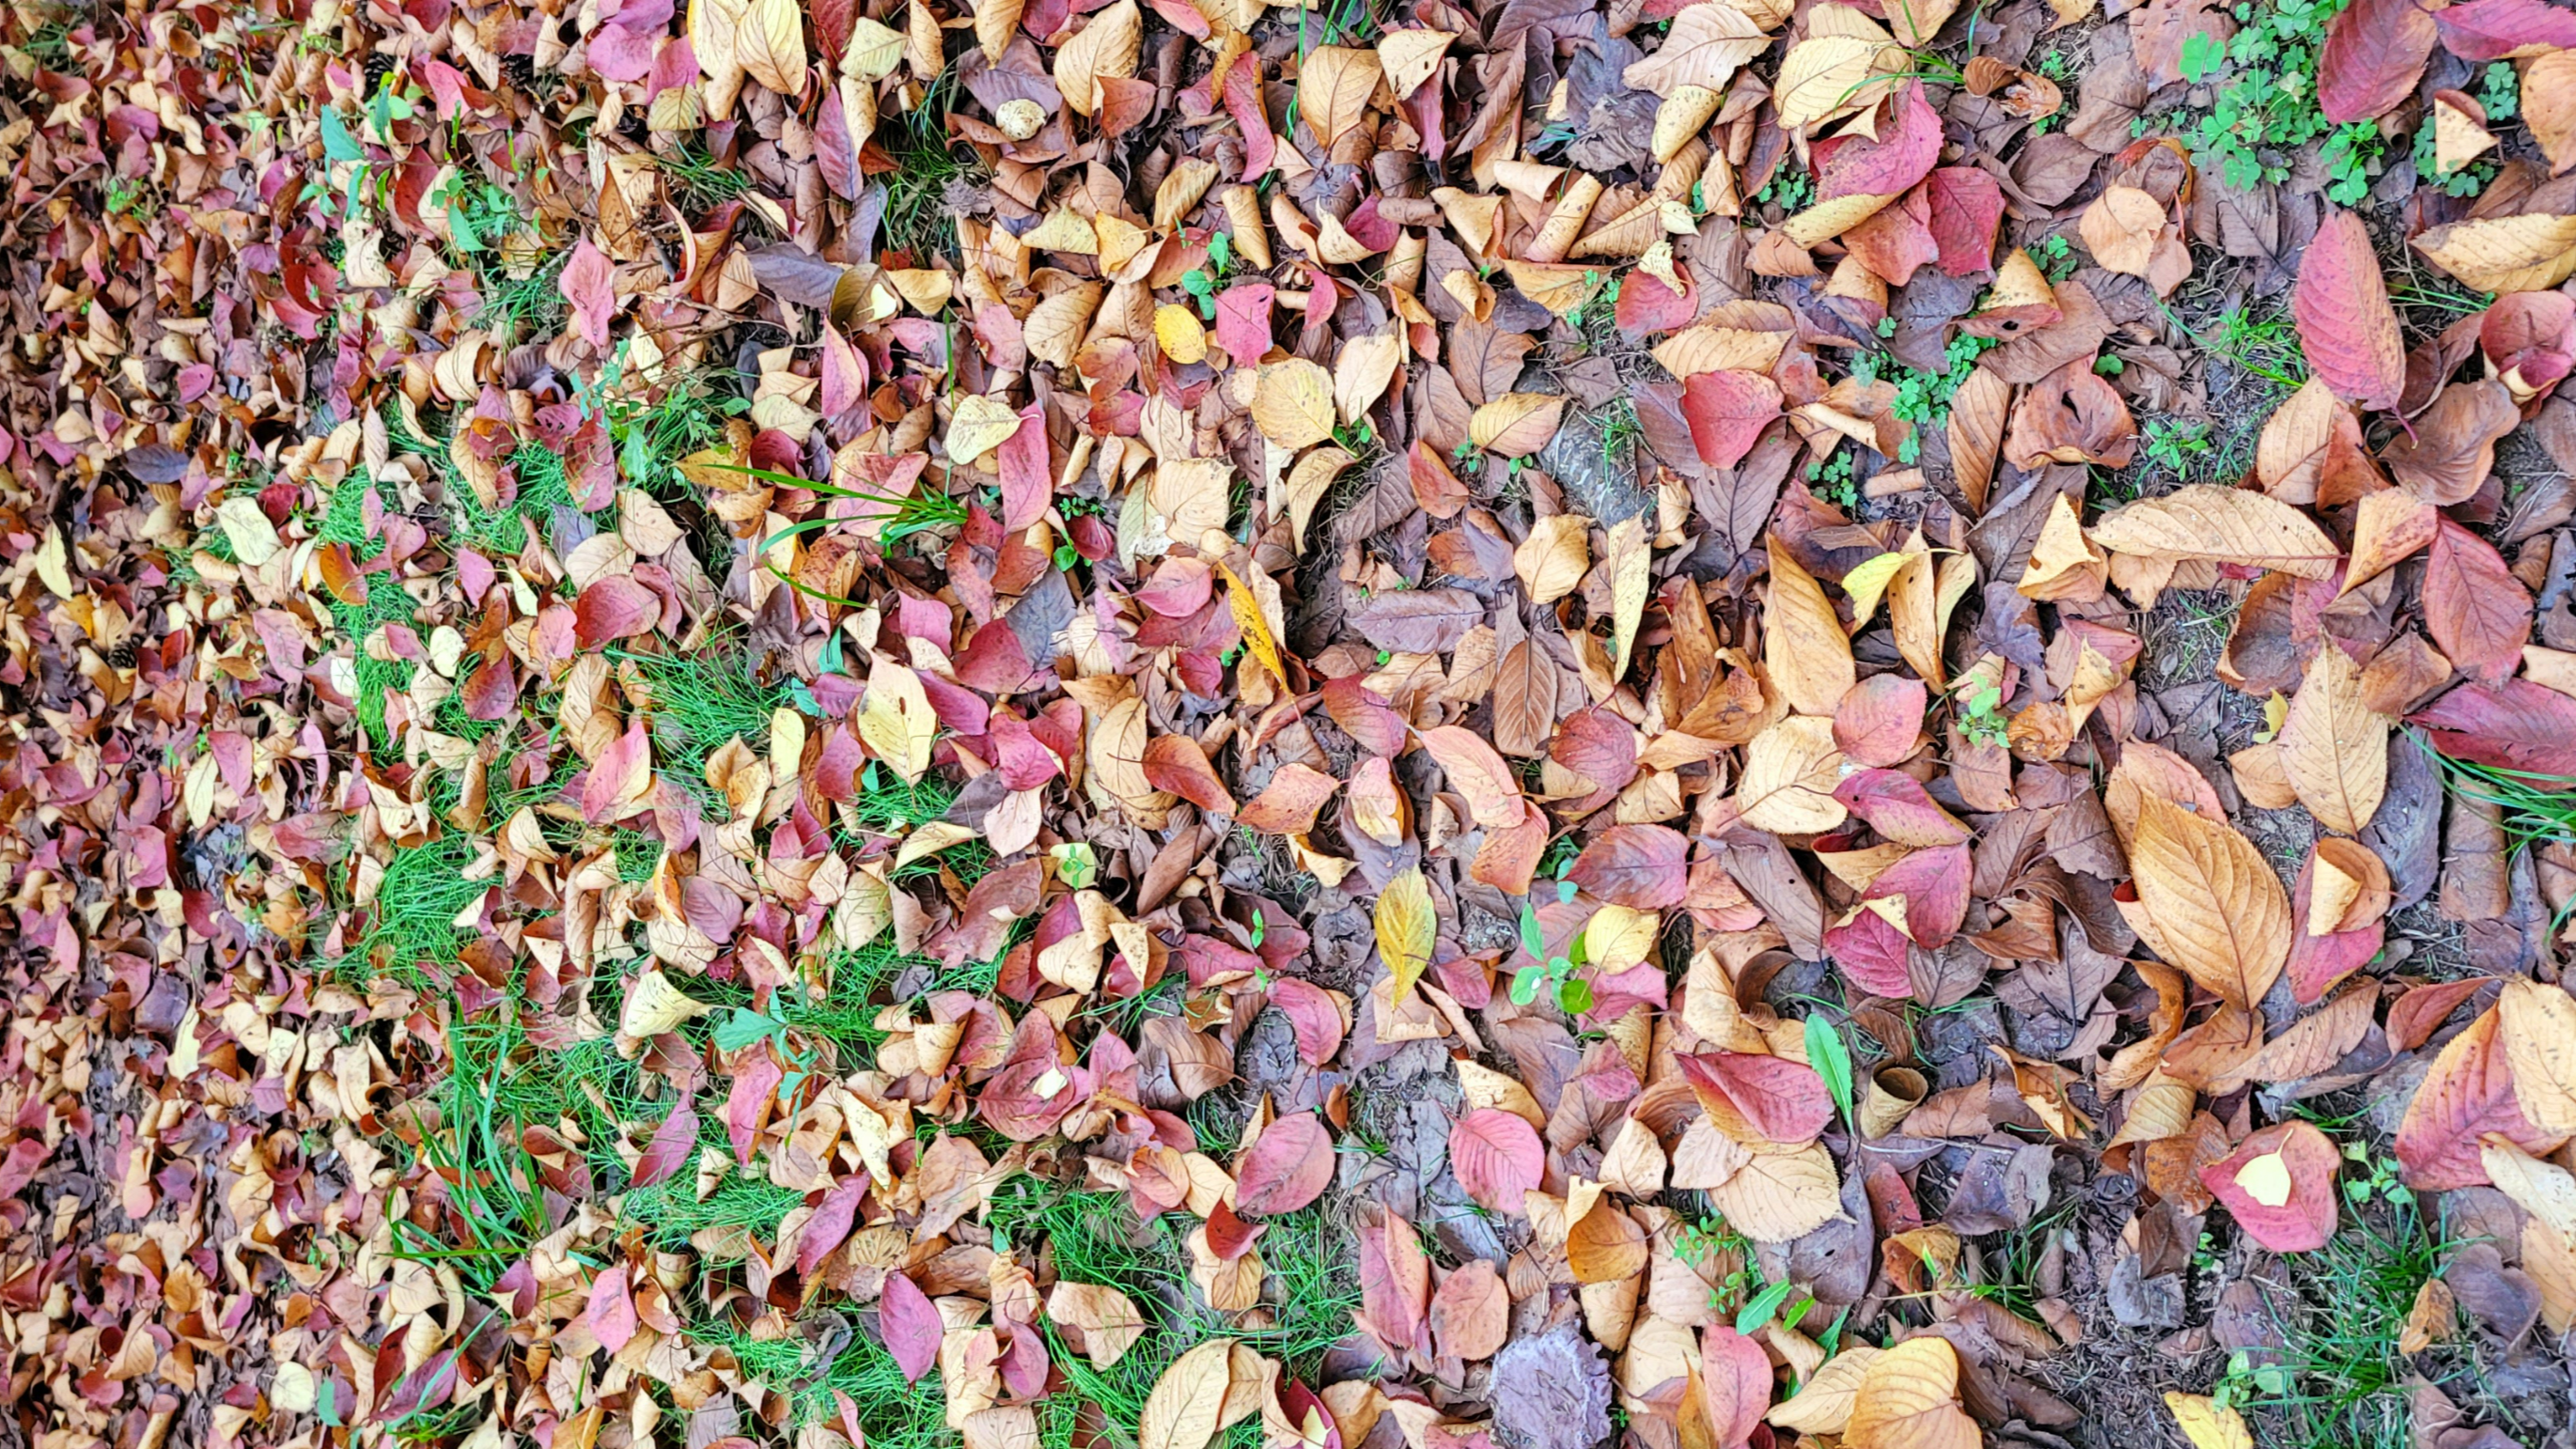 떨어진 낙엽들을 쓸모없음과 쓸모있음의 시선으로 바라본다면 낙엽이 물들어 사라지는 가을이 무슨 소용이랴!